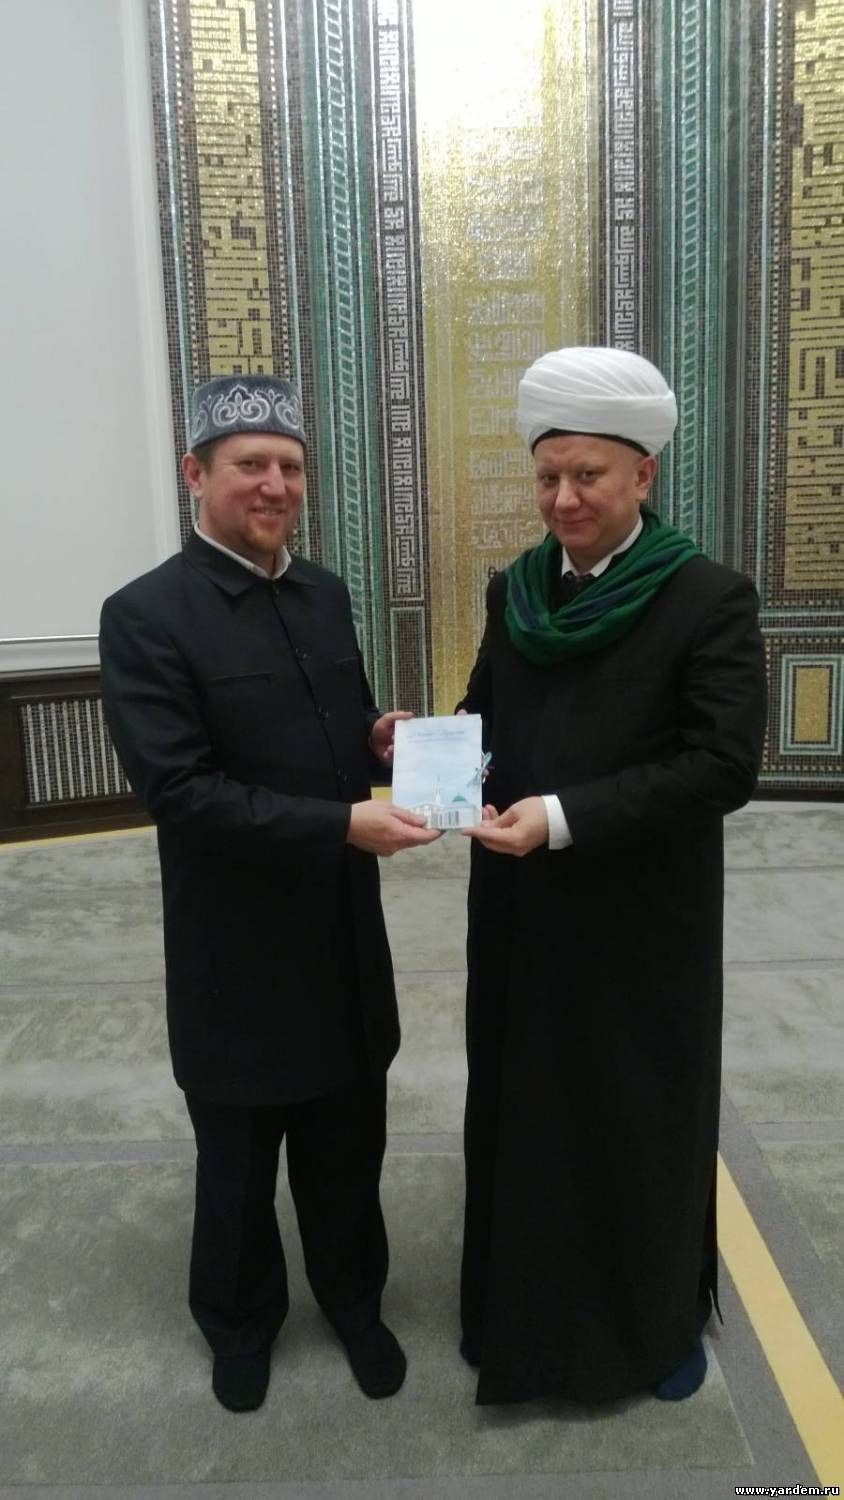 Муфтий Москвы Альбир Крганов поздравил с юбилеем фонда "Ярдэм". Общие новости